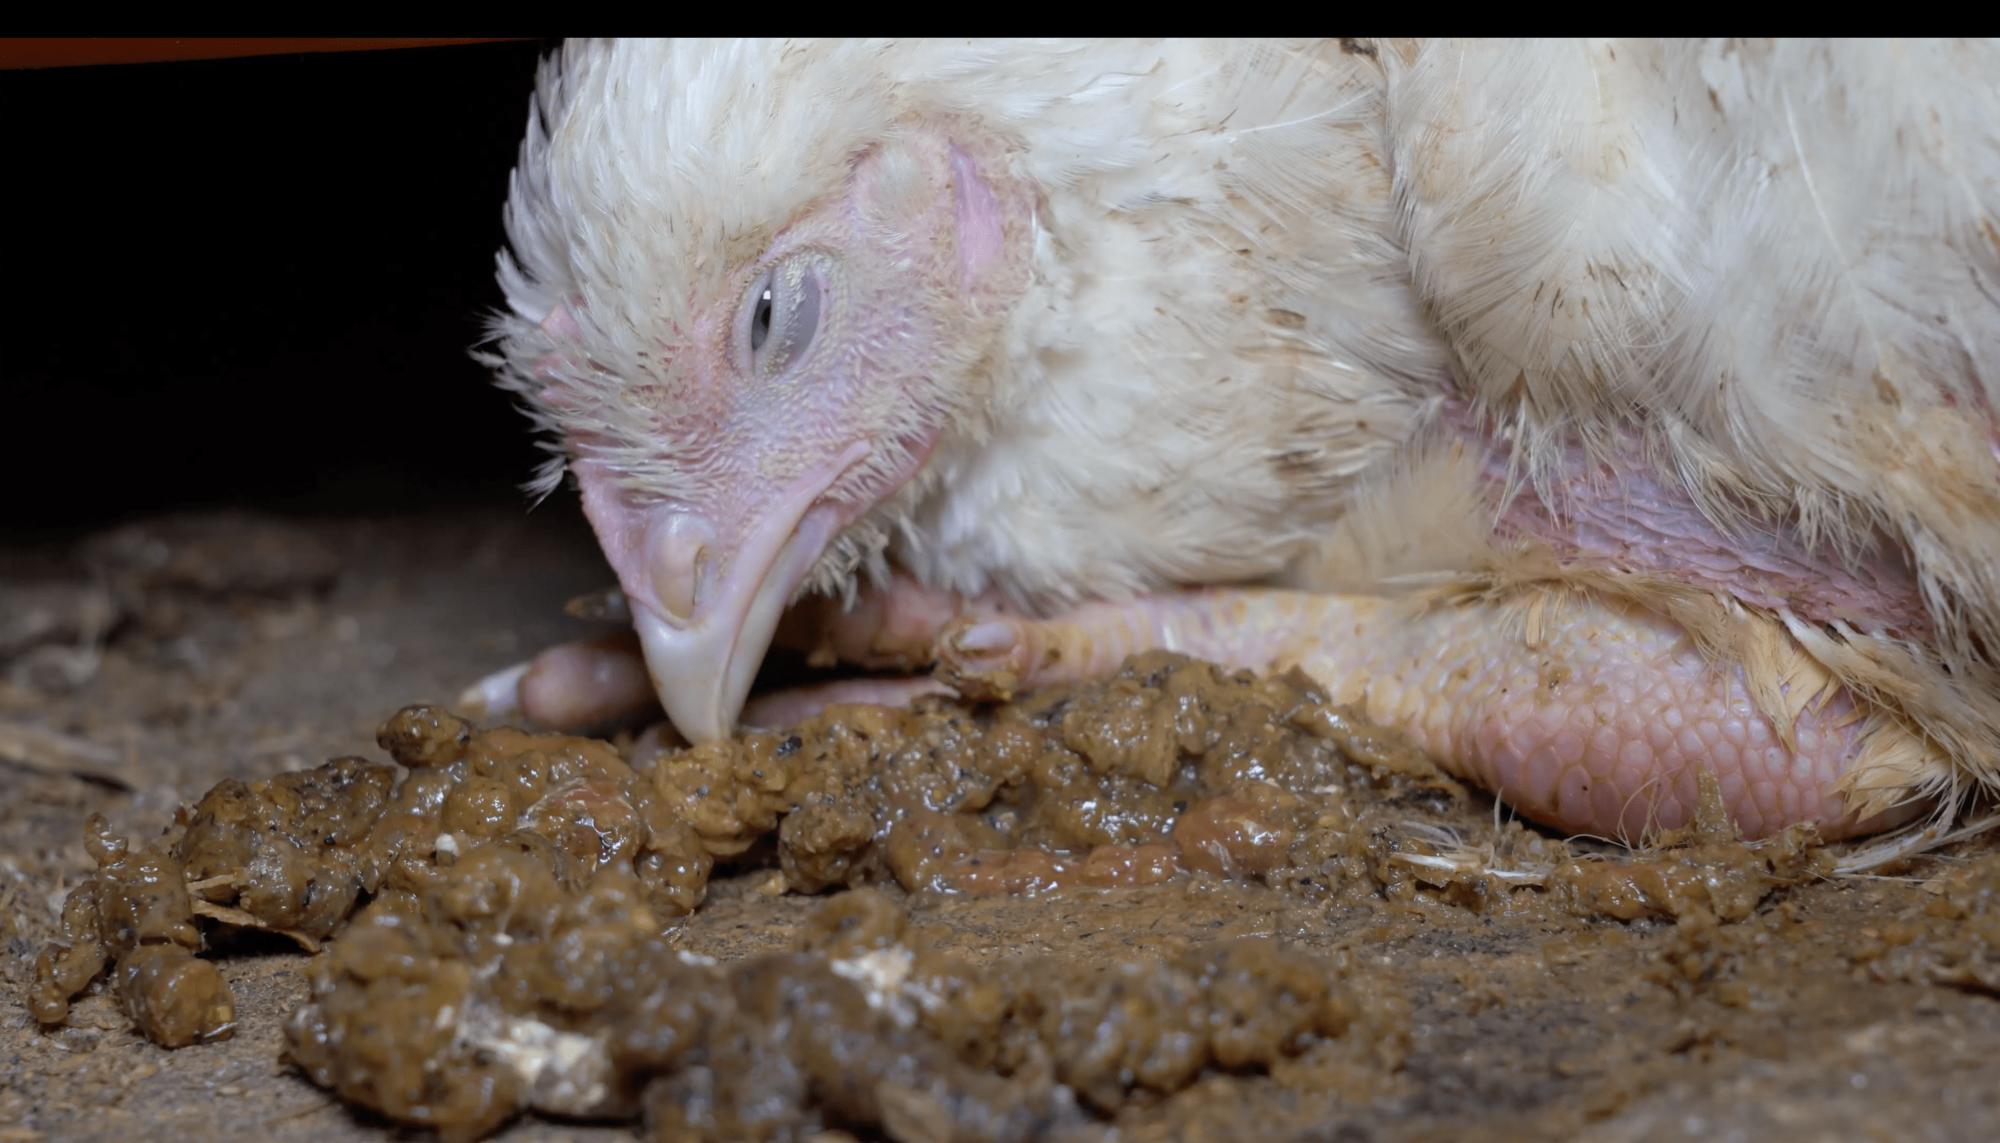 Investigación de Equalia sobre maltrato animal en granjas avícolas alemanas vinculadas a Lidl - 1